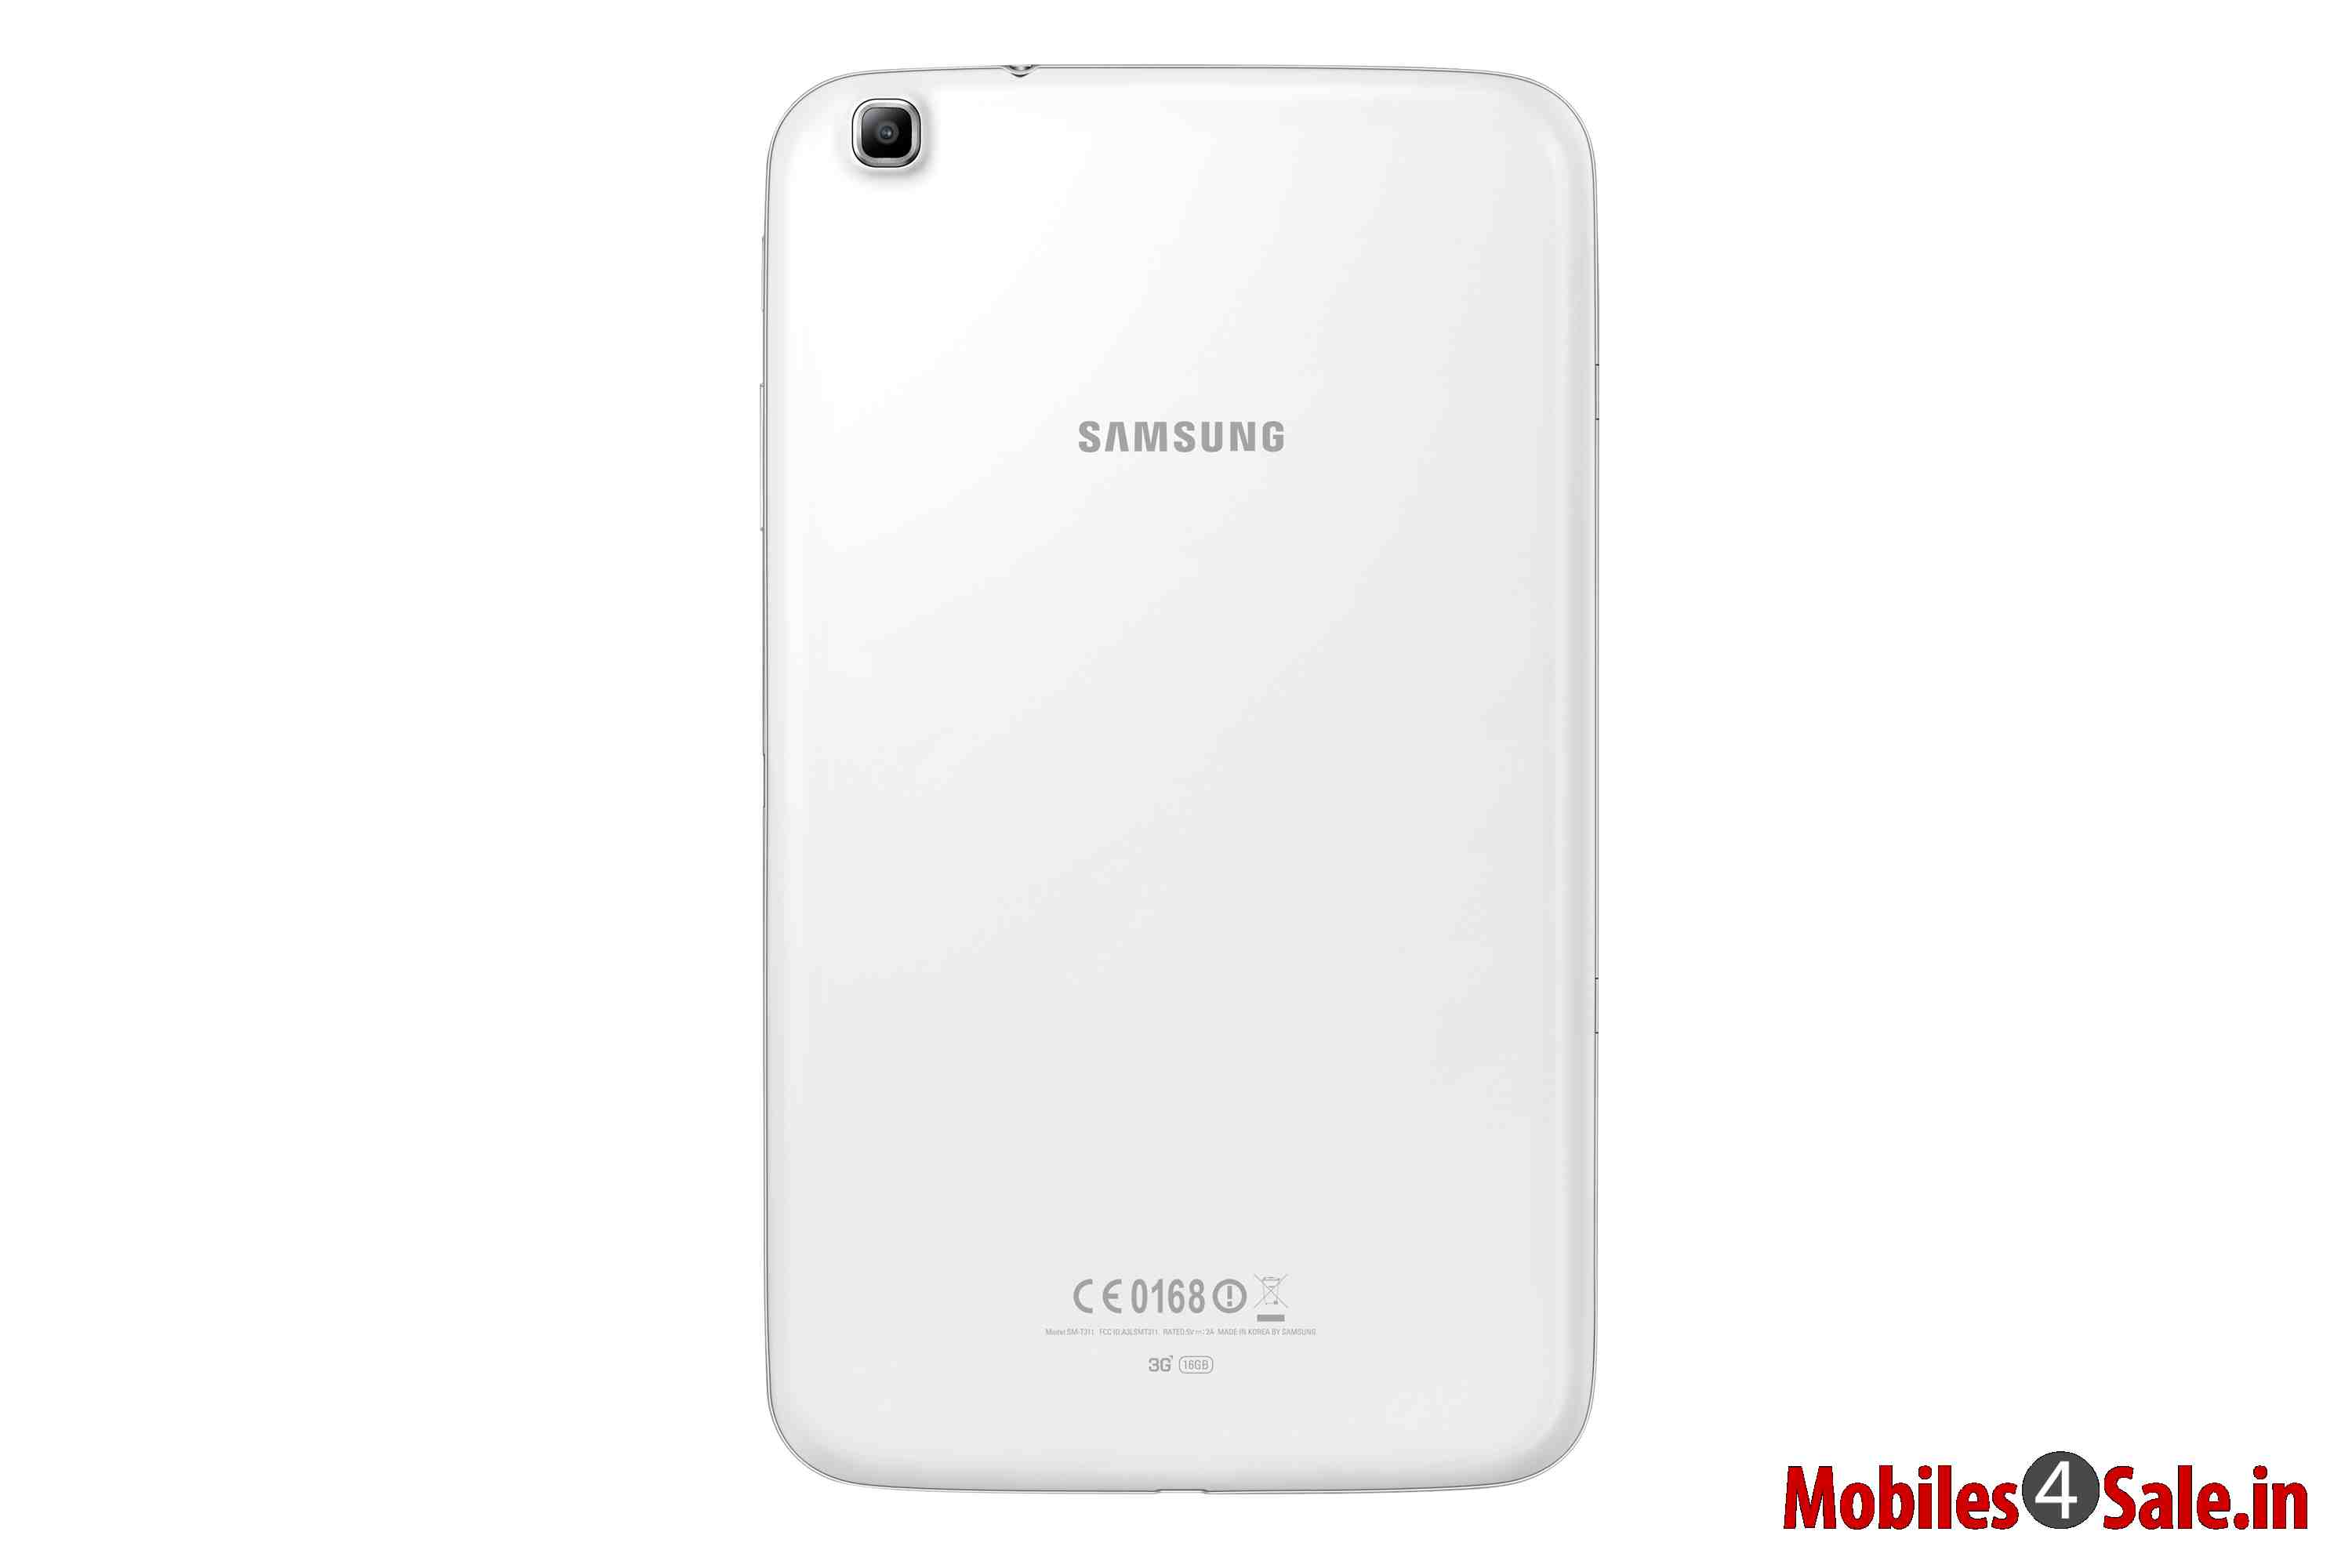 Samsung Galaxy Tab 3 311